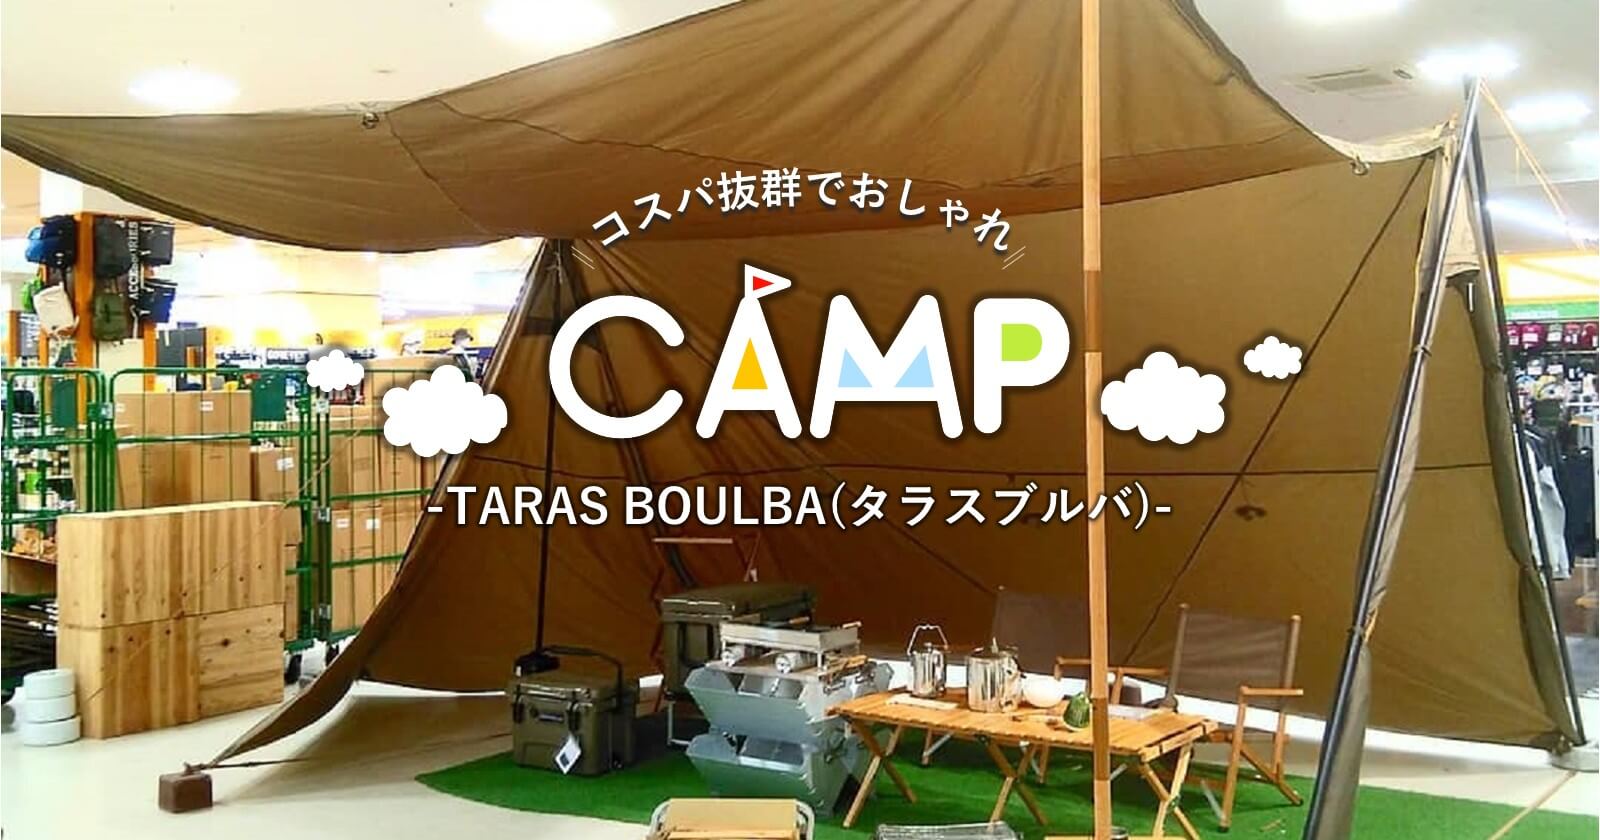 TARAS BOULBA（タラスブルバ）はおしゃれキャンプのマストアイテム